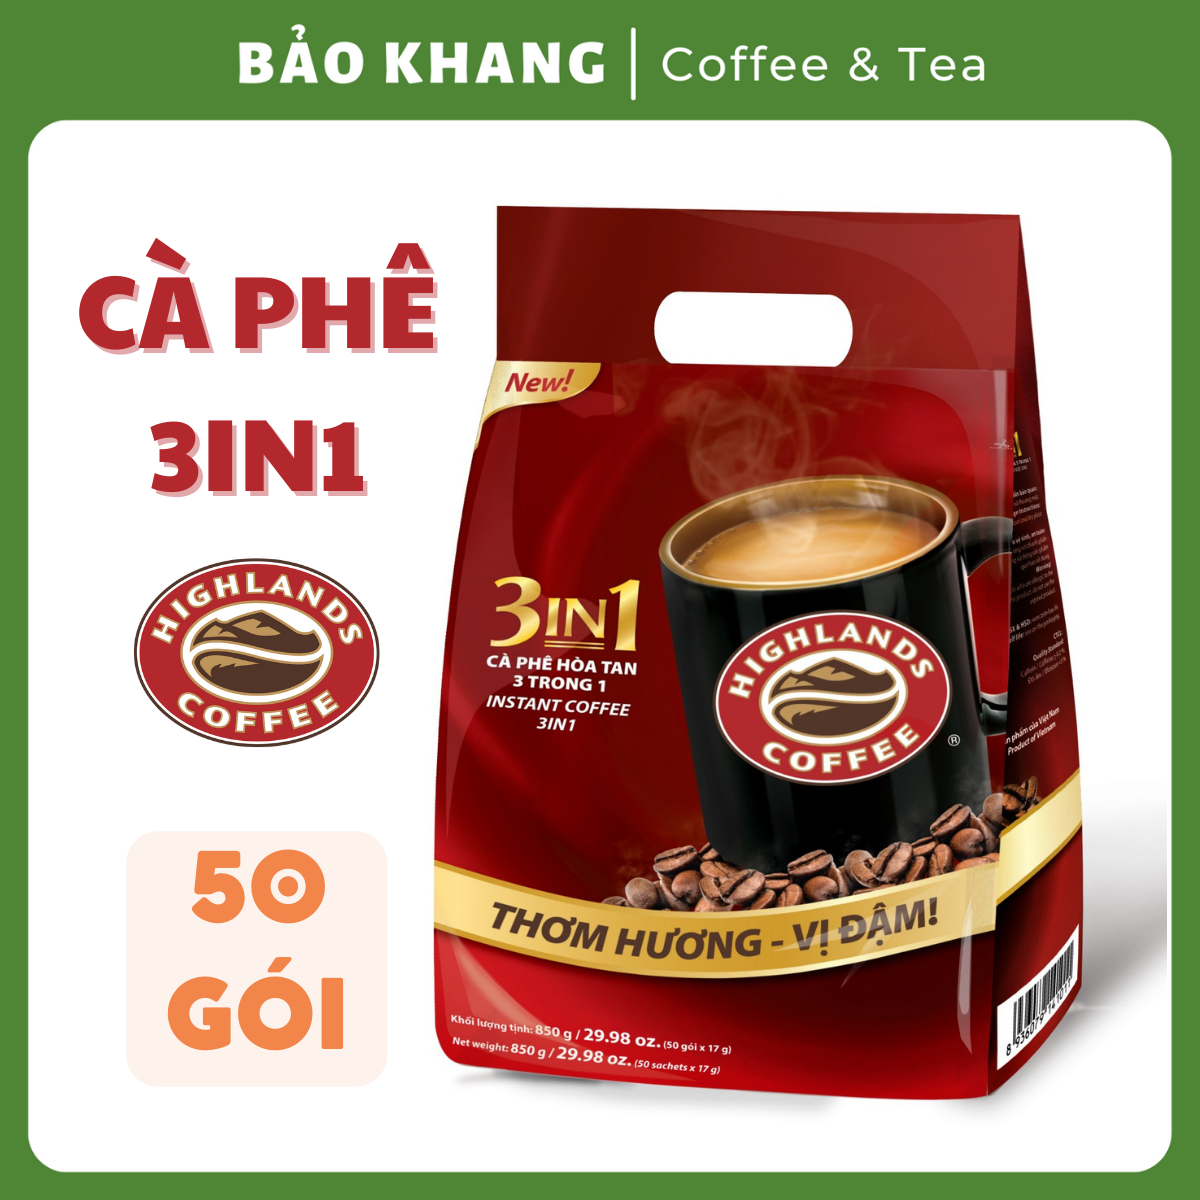 Cà Phê Highland 3in1 Hòa Tan 17g 50 gói - Bảo Khang Coffee & Tea